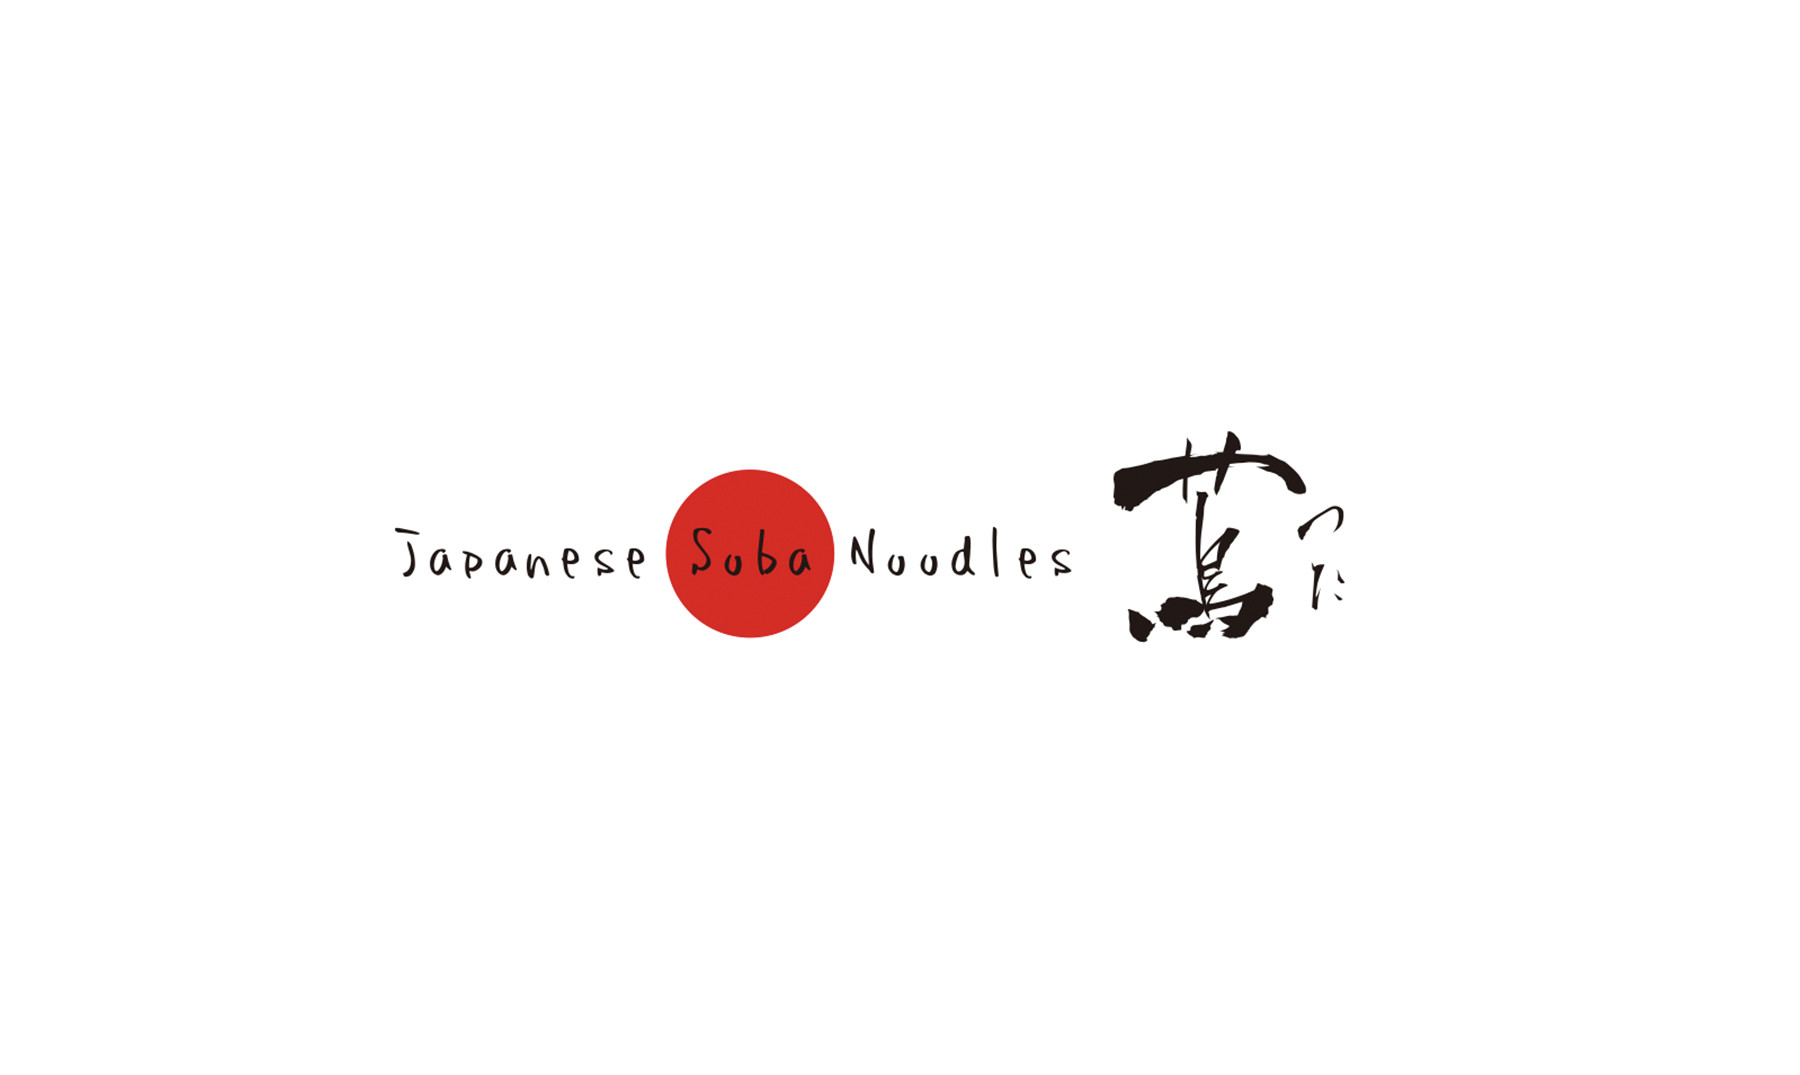 Japanese Soba Noodles Tsuta's images1